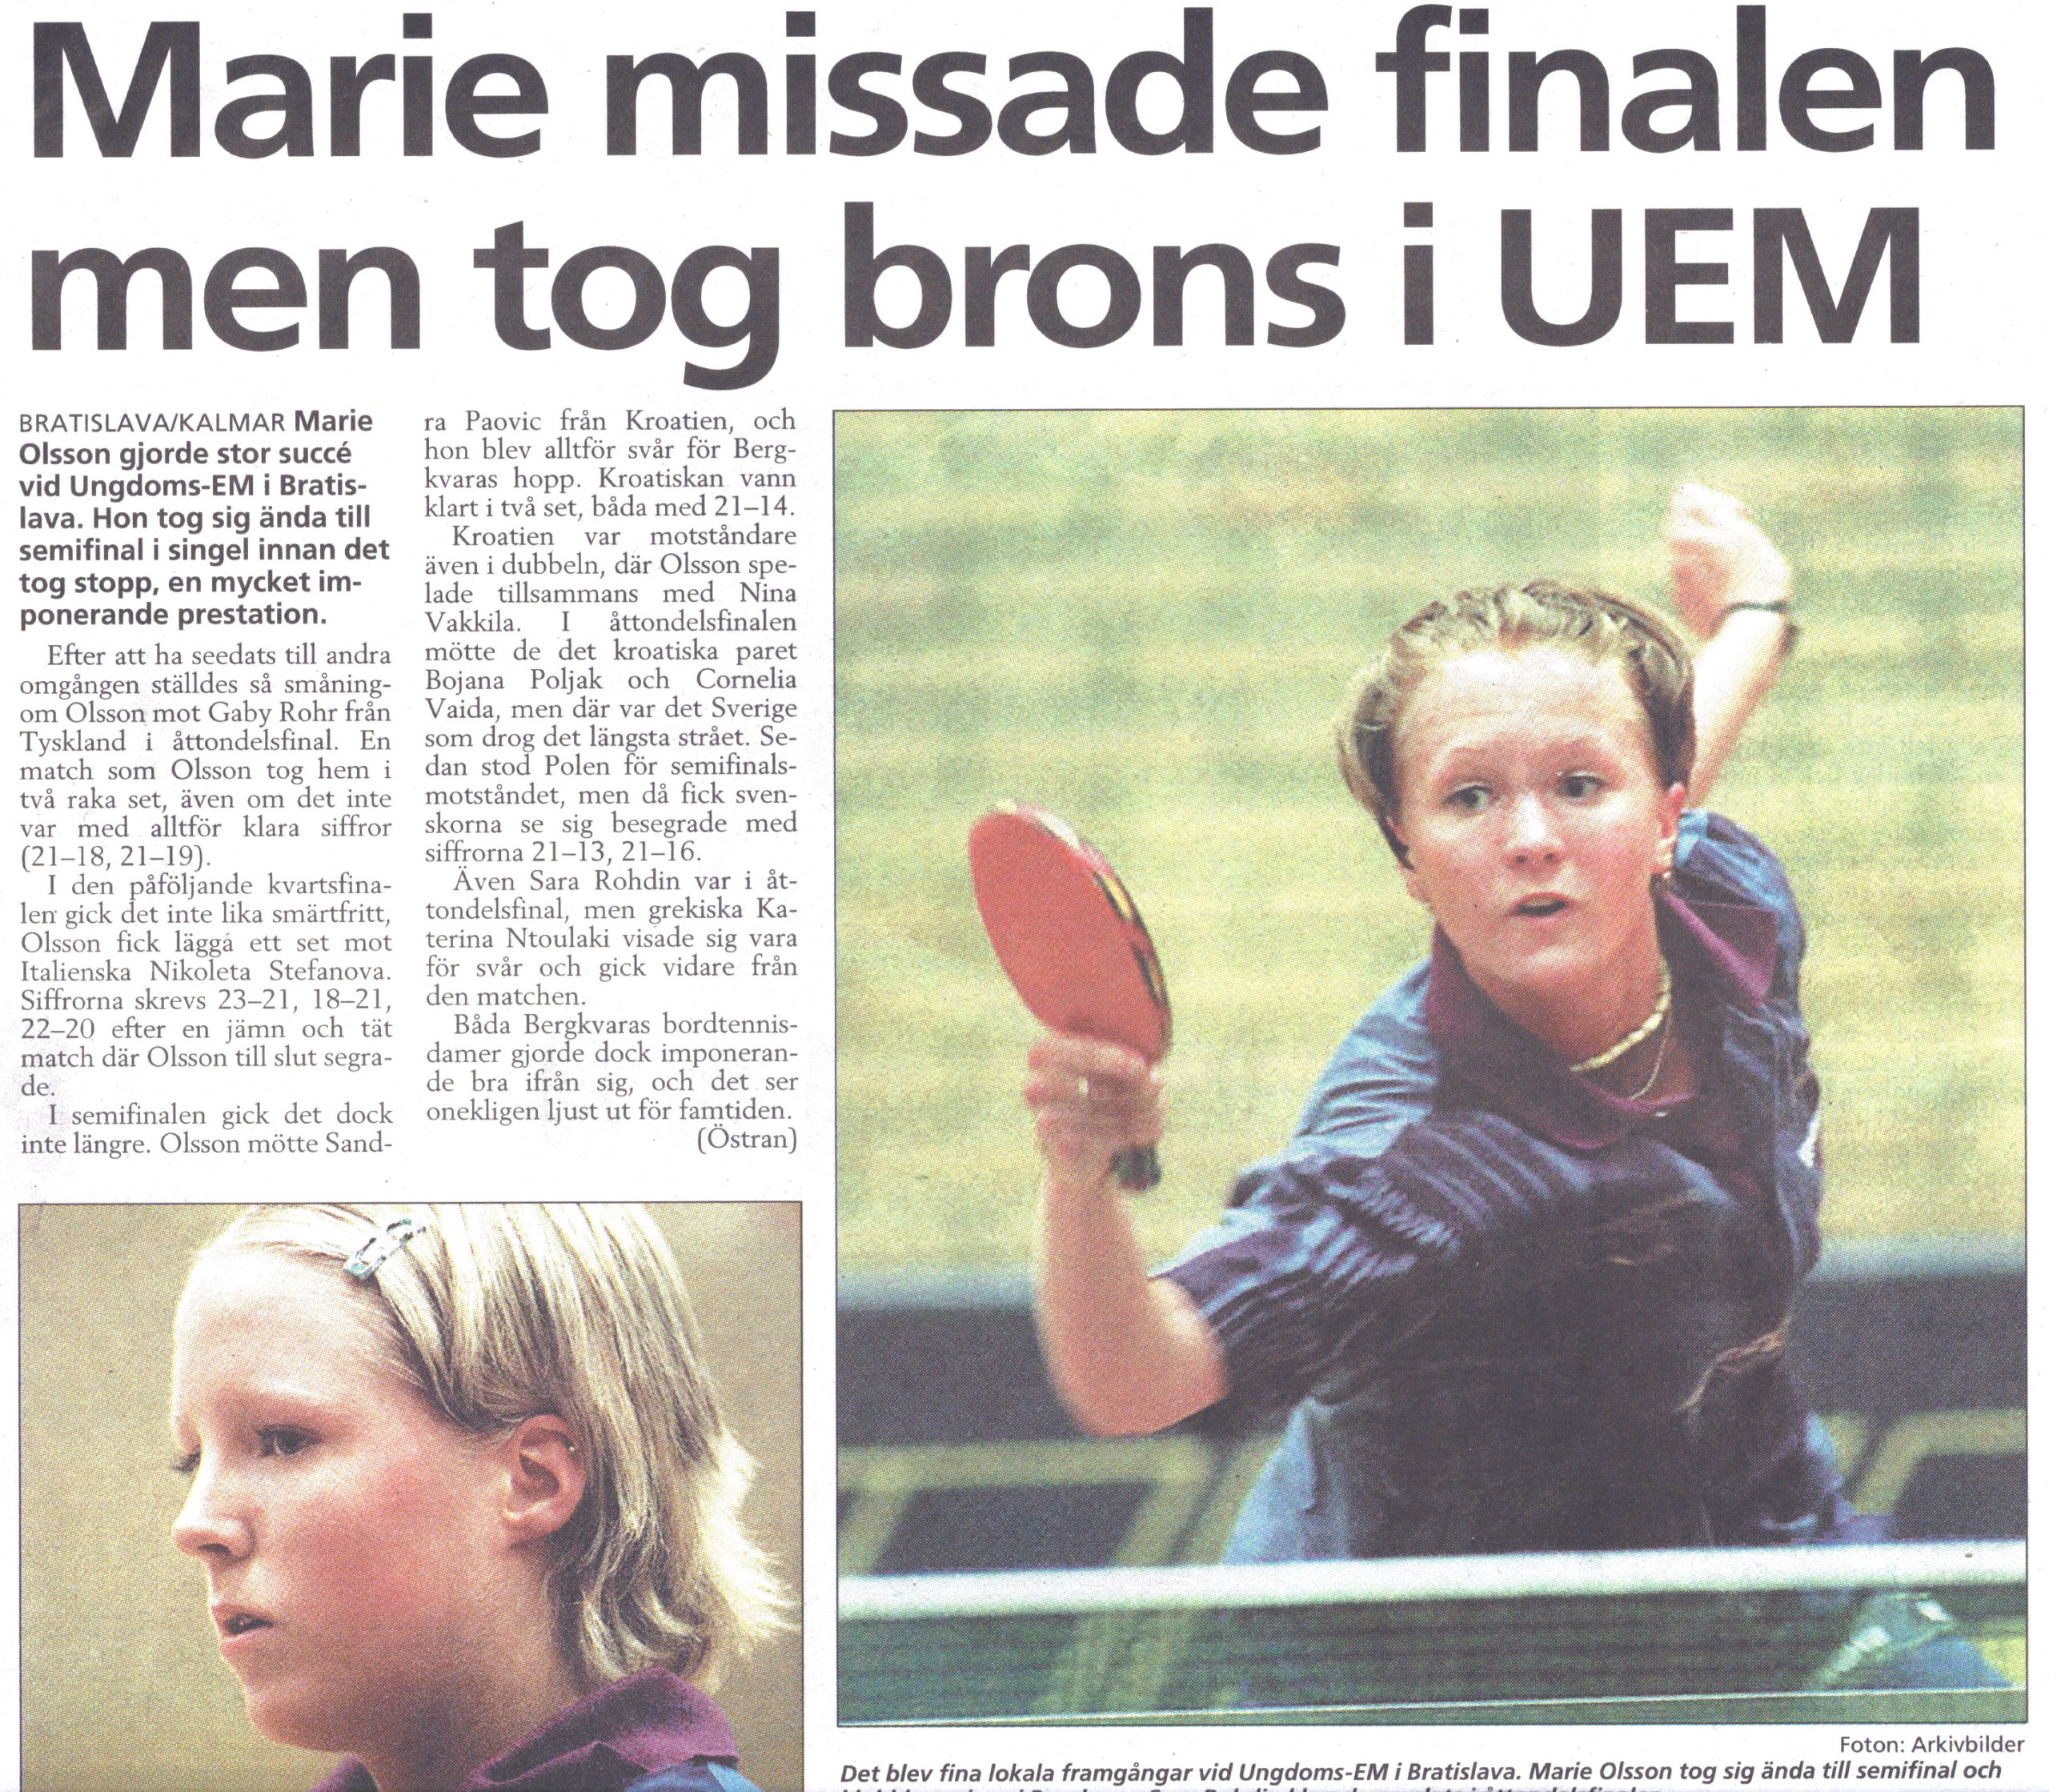 Artikel - Marie missade finalen men tog brons i UEM, 2001